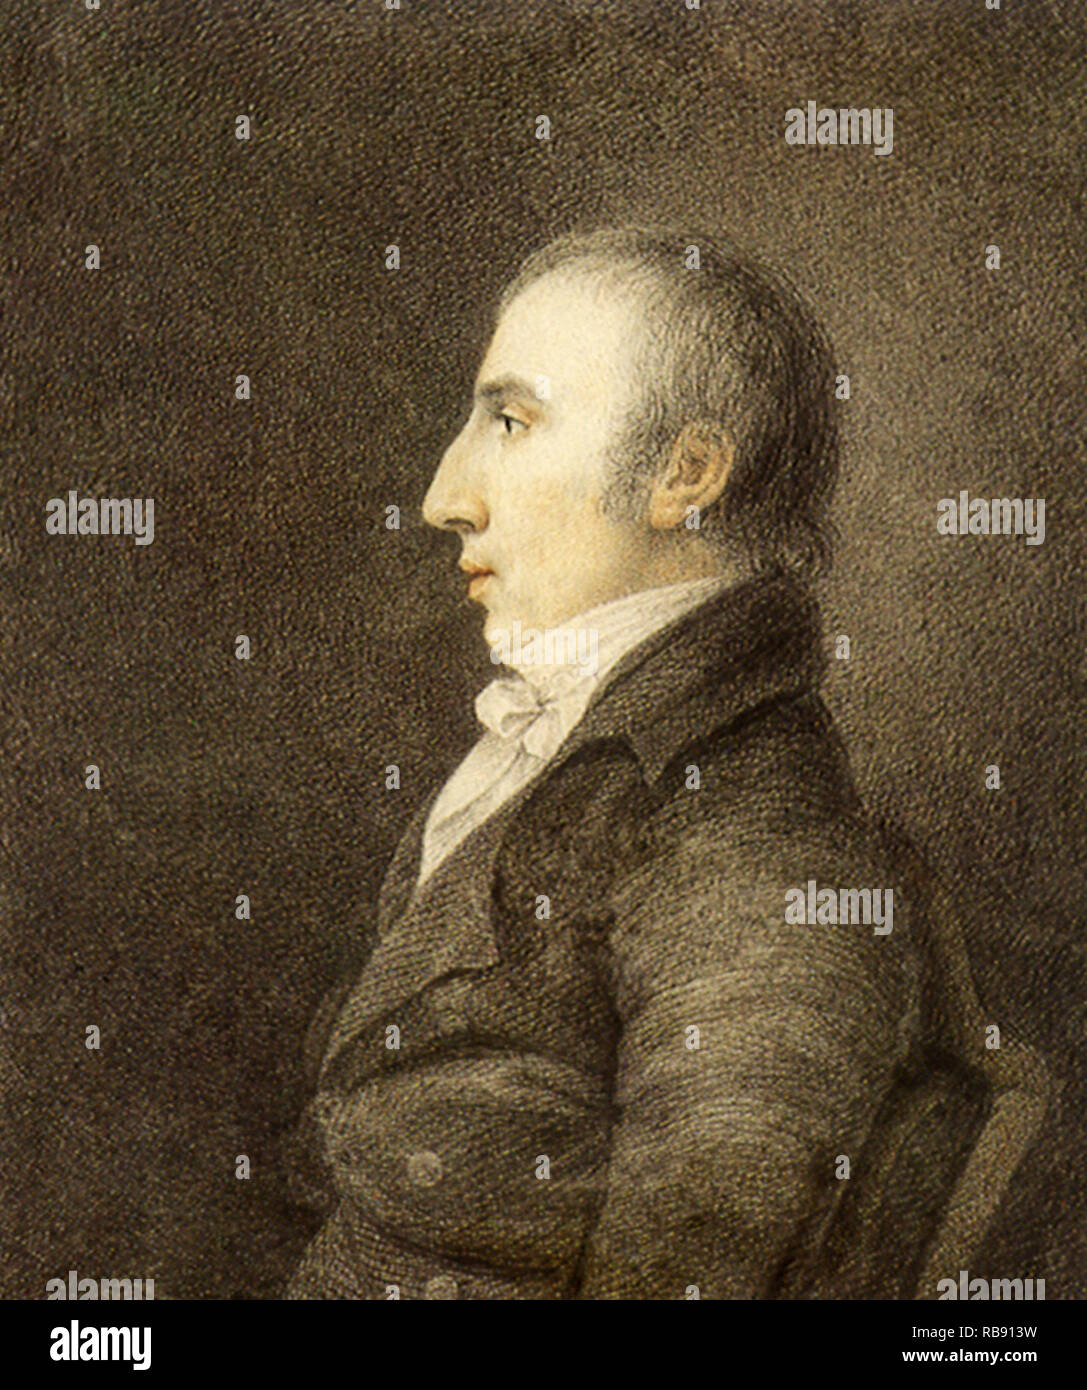 William Wordsworth 1798 Stock Photo